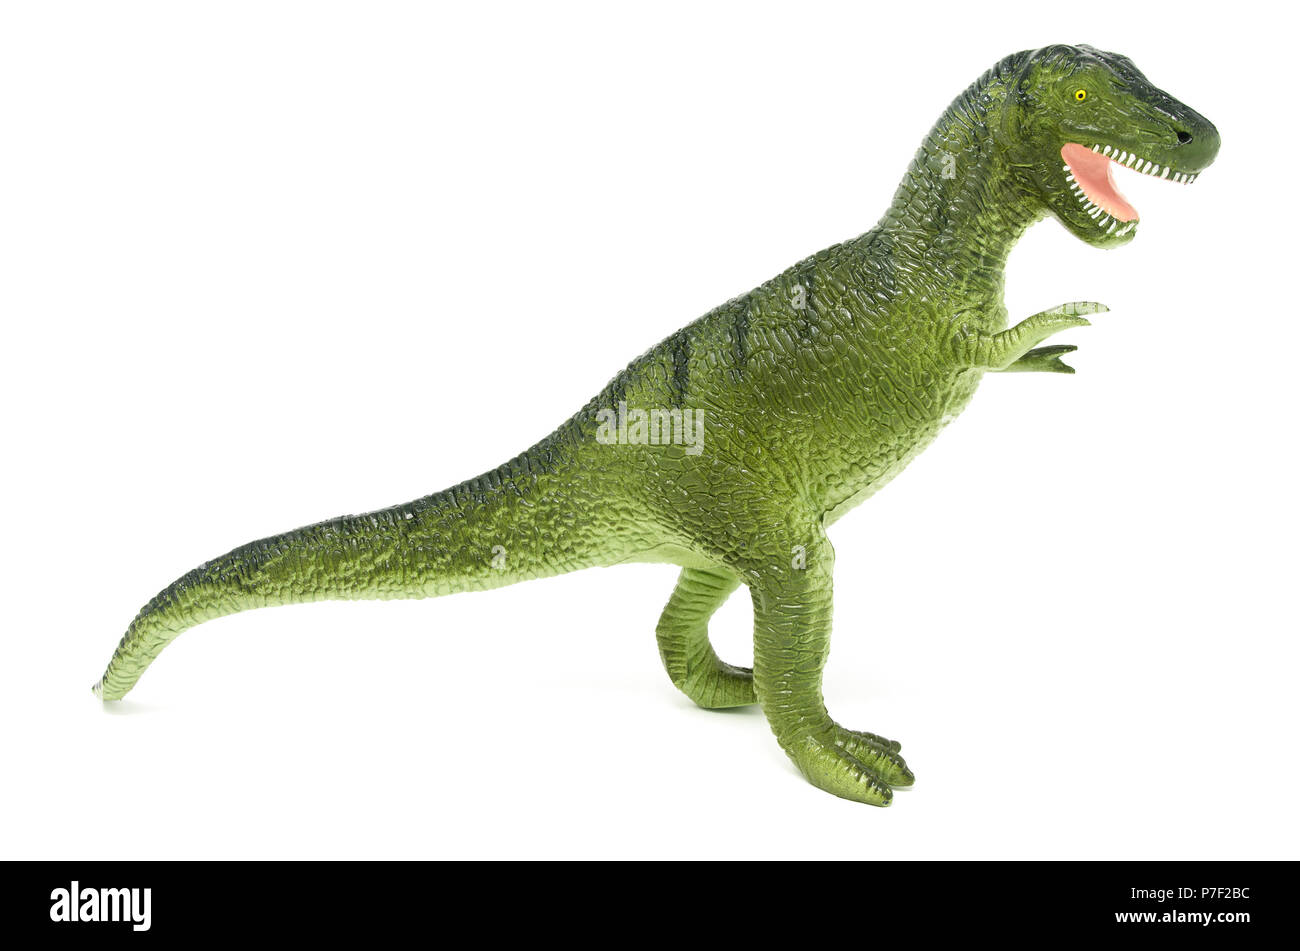 Du côté vert en plastique jouet dinosaure Tyrannosaurus rex, isolé sur un fond blanc. Banque D'Images